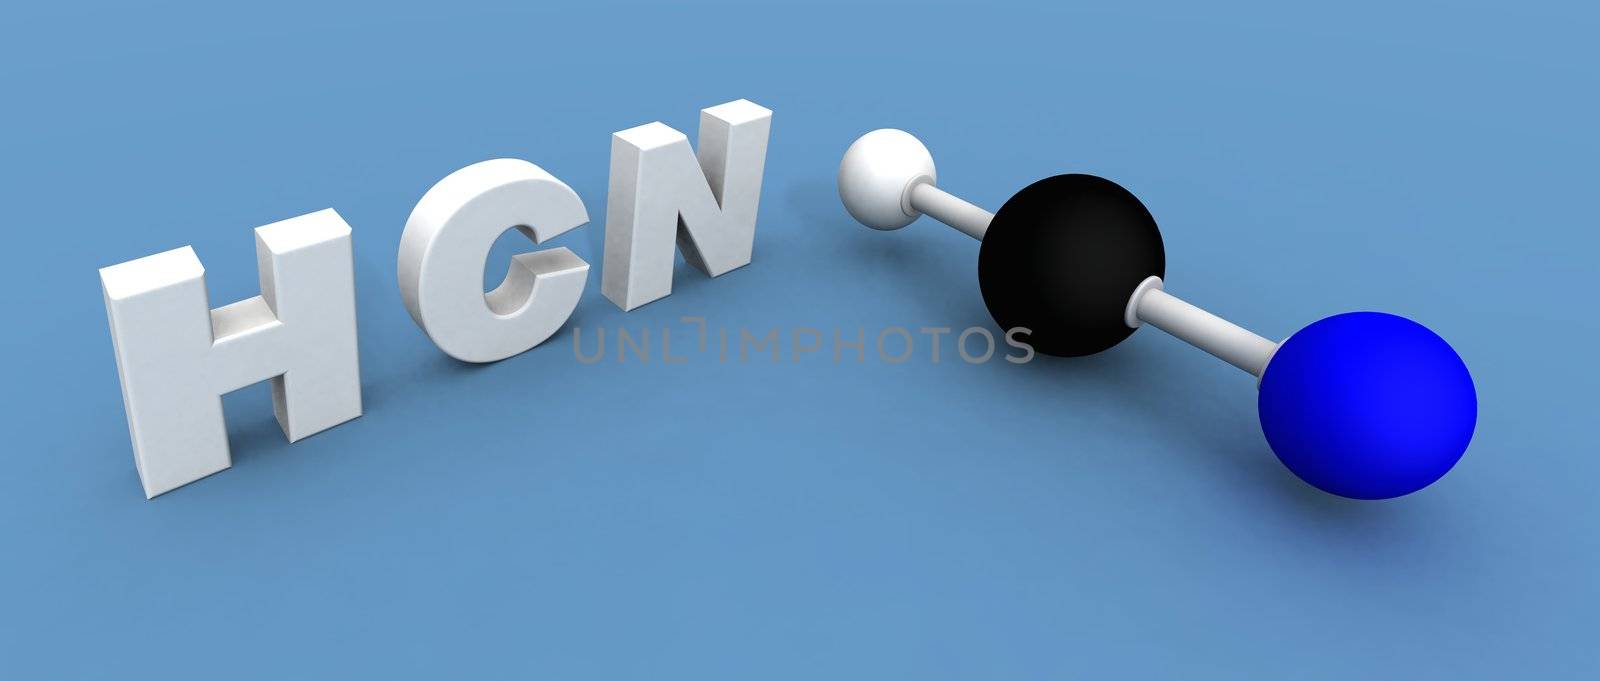 hydrogen cyanide molecule by jbouzou